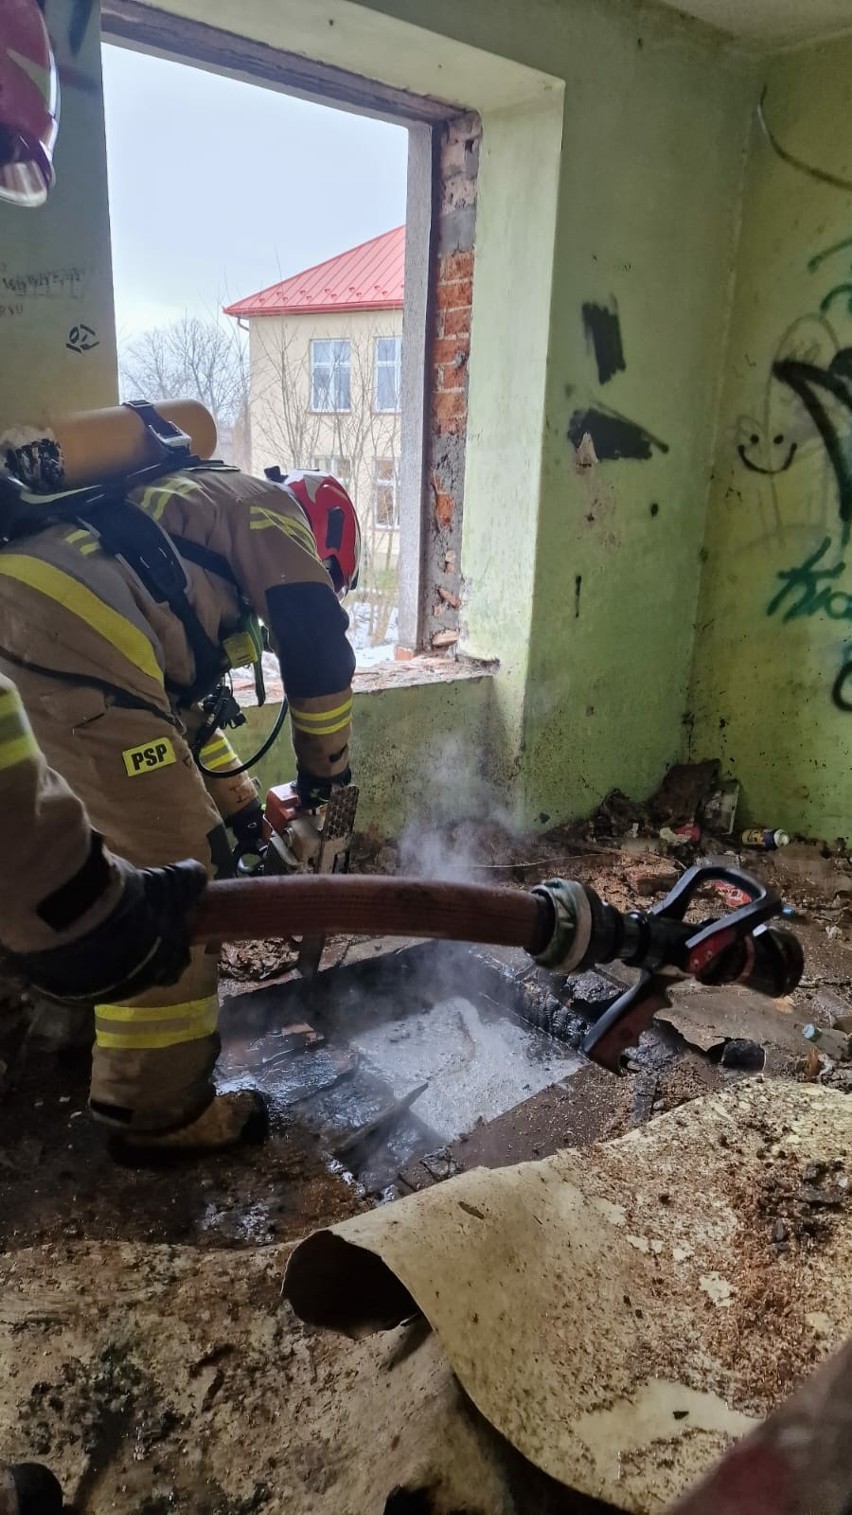 Akcja gaśnicza na terenie młyna Szancera w Tarnowie. Strażacy walczyli z pożarem, który wybuchł w jednym z opuszczonych budynków